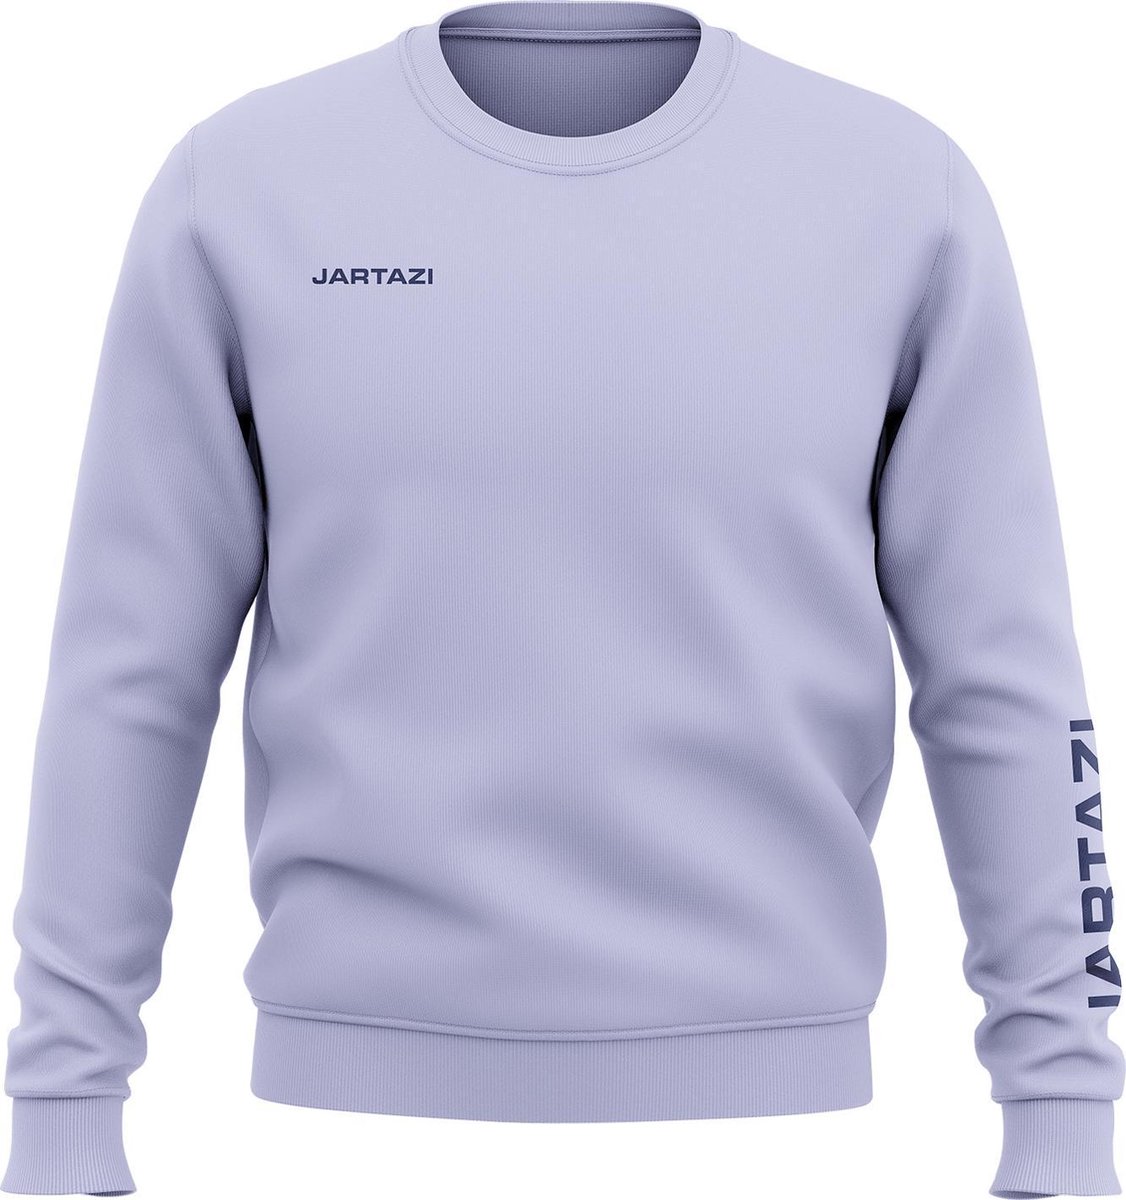 Jartazi Sweater Premium Crewneck Katoen/polyester Blauw Maat Xs